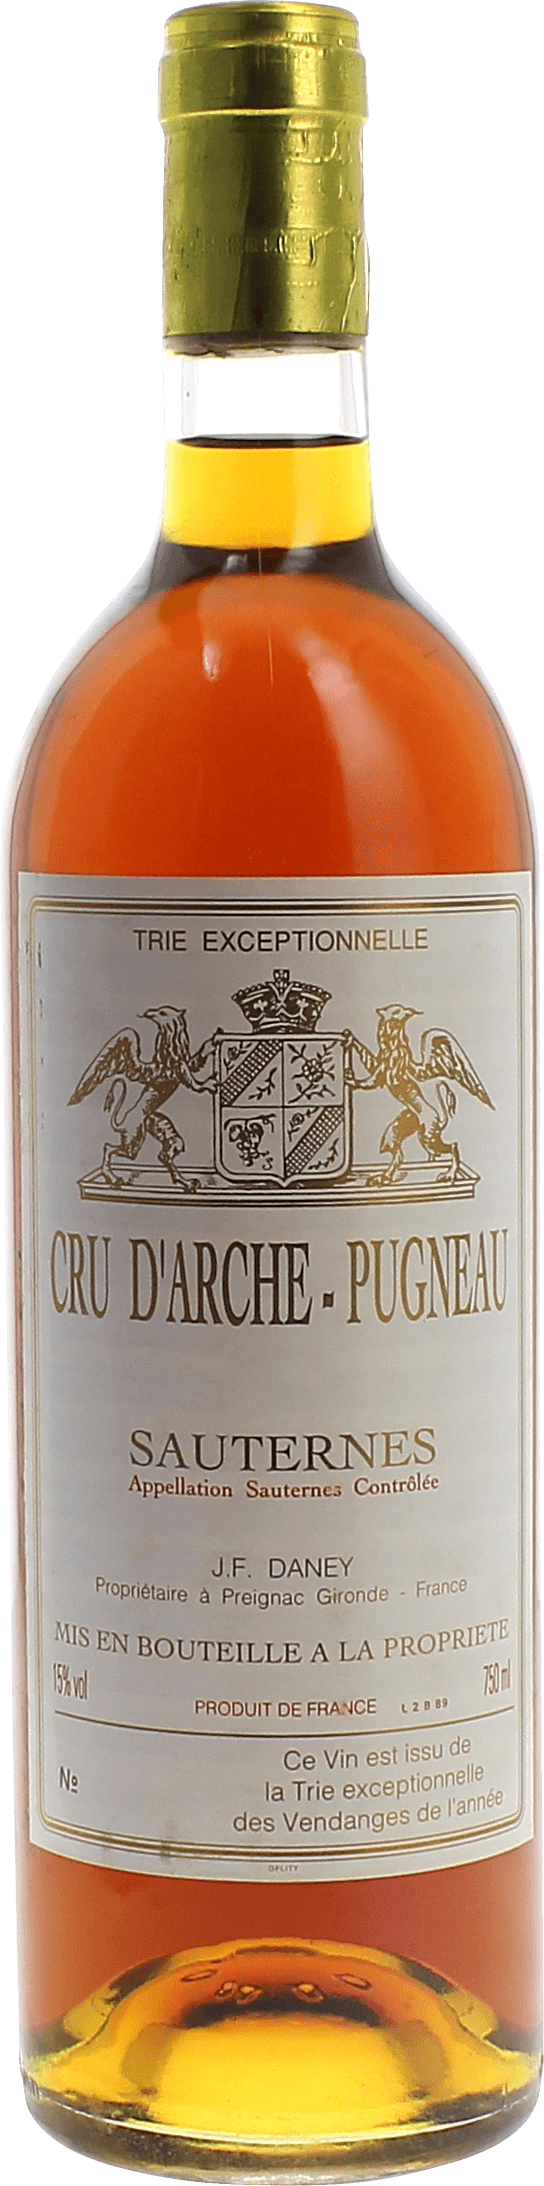 Arche pugneau 1989  Sauternes Barsac, Bordeaux blanc